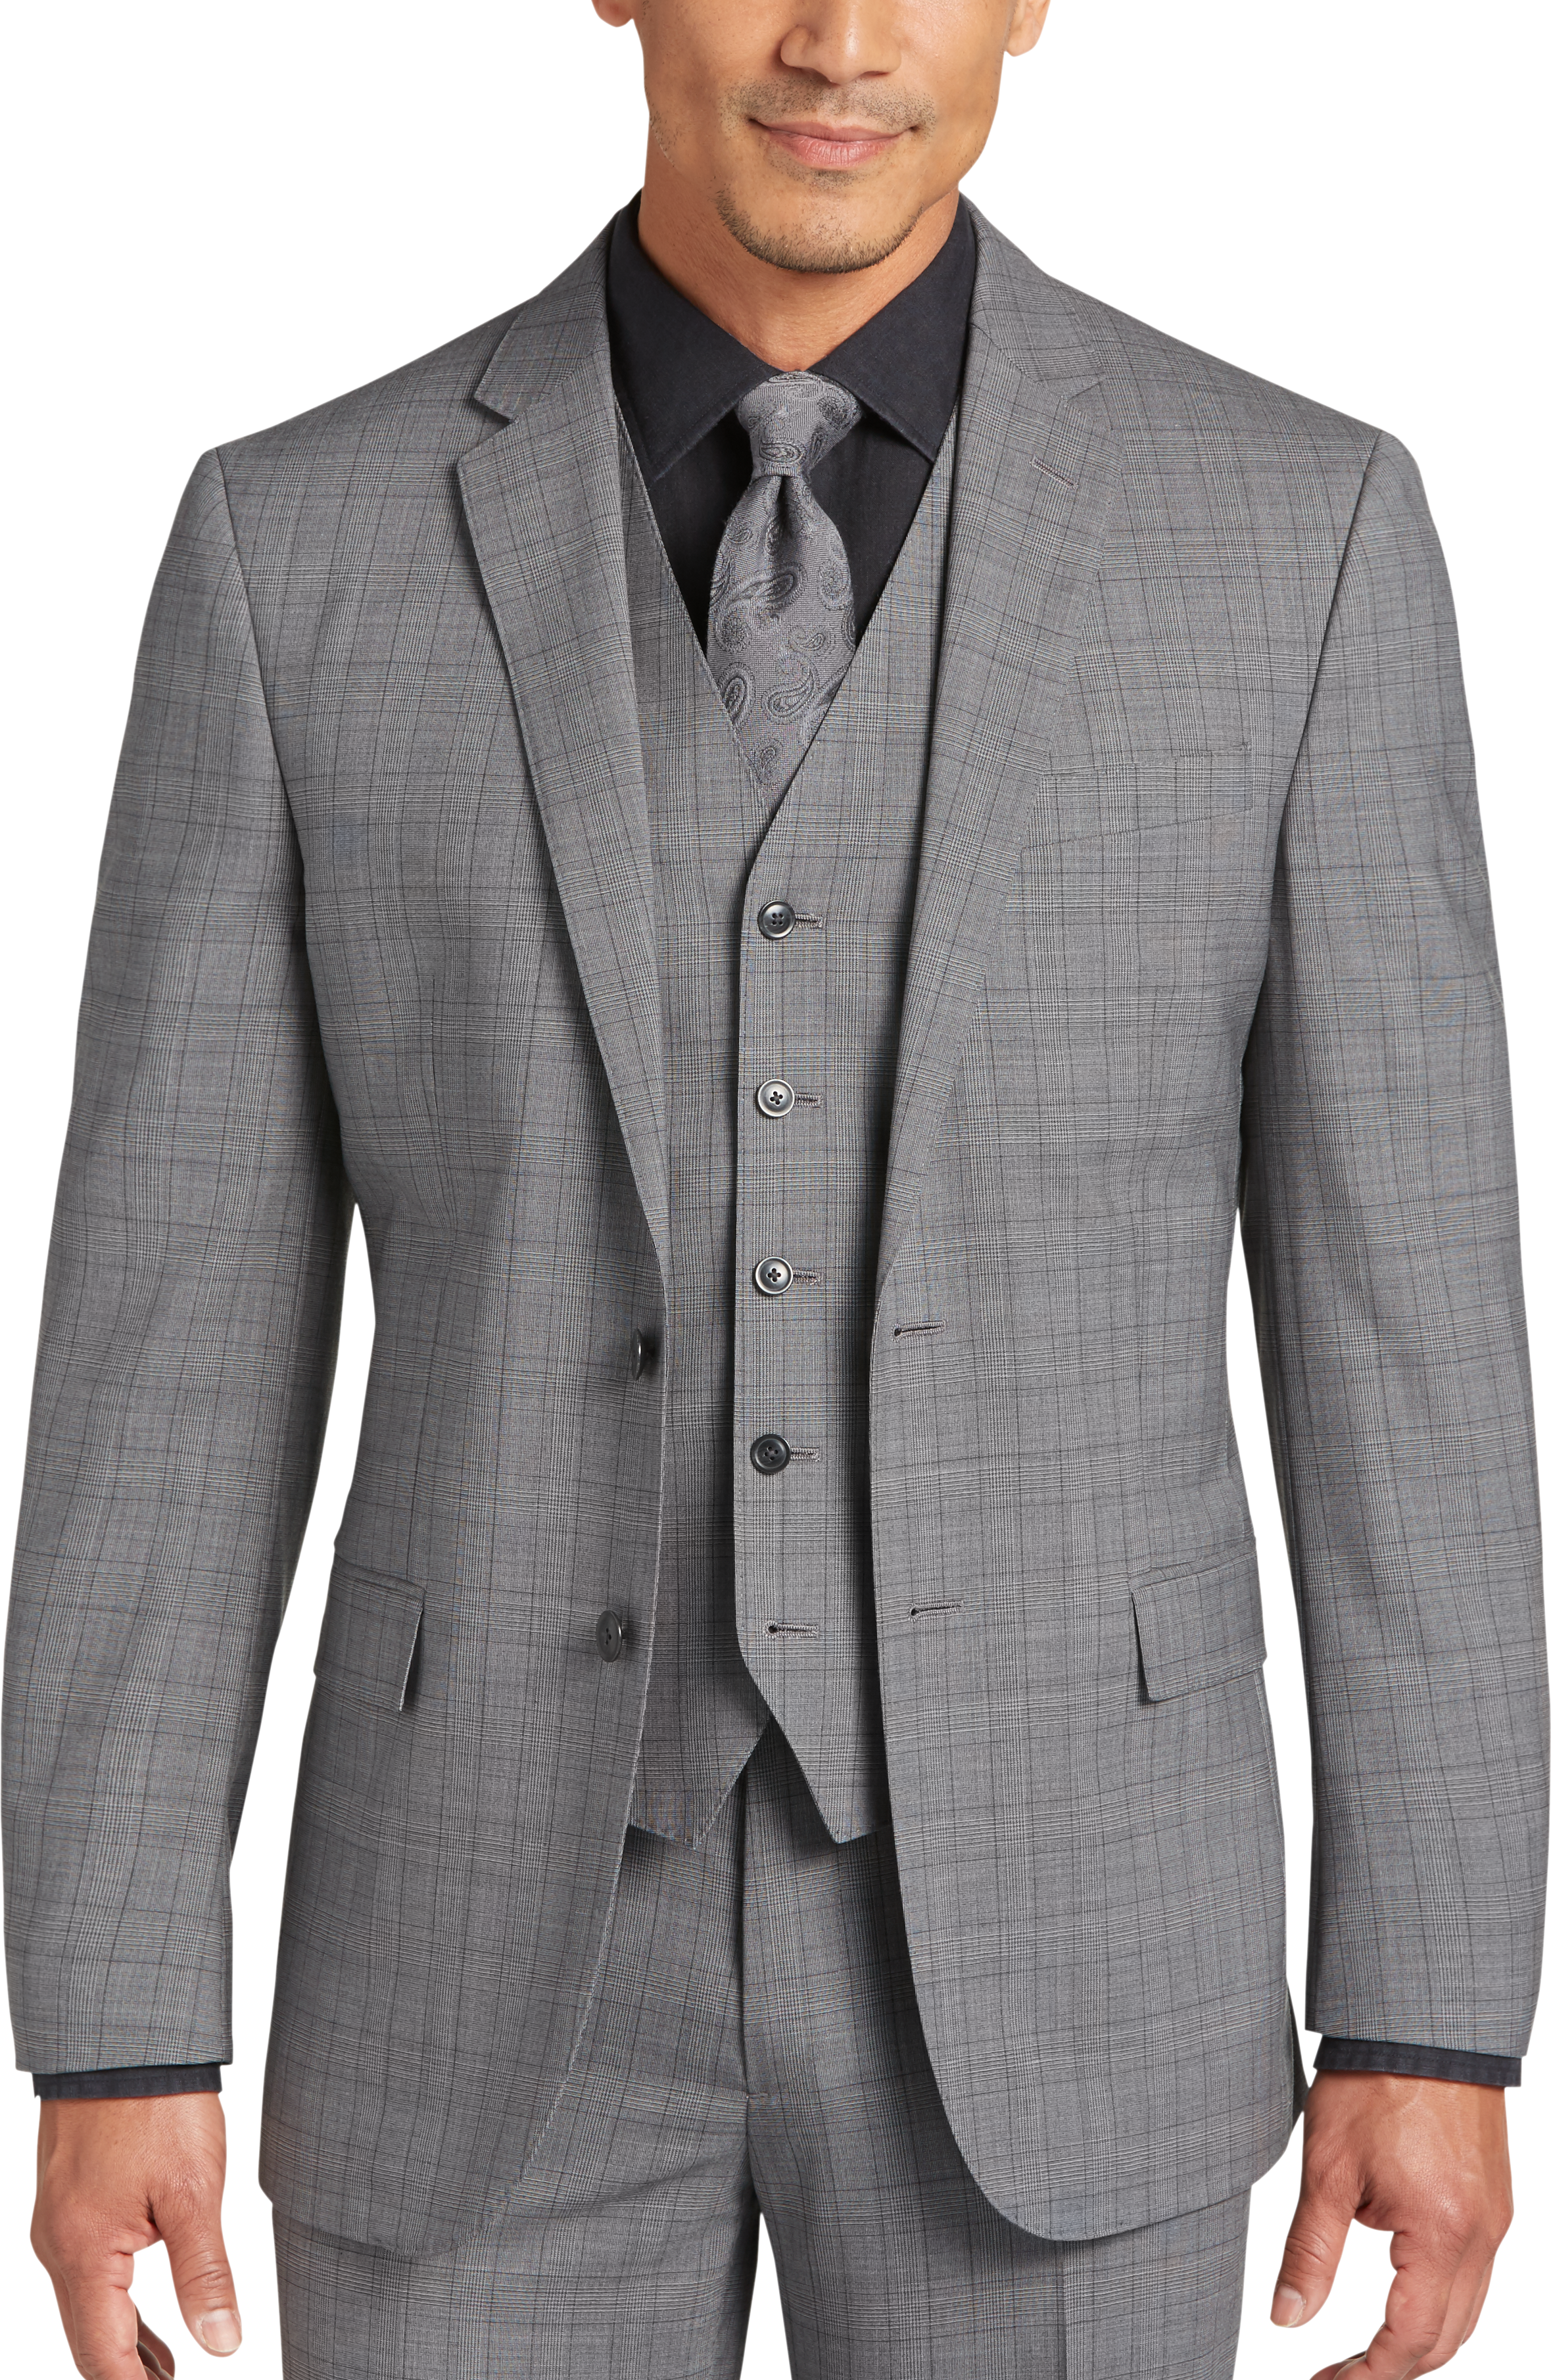 JOE Joseph Abboud Gray Plaid Slim Fit Vested Suit - Men's Sale | Men's ...